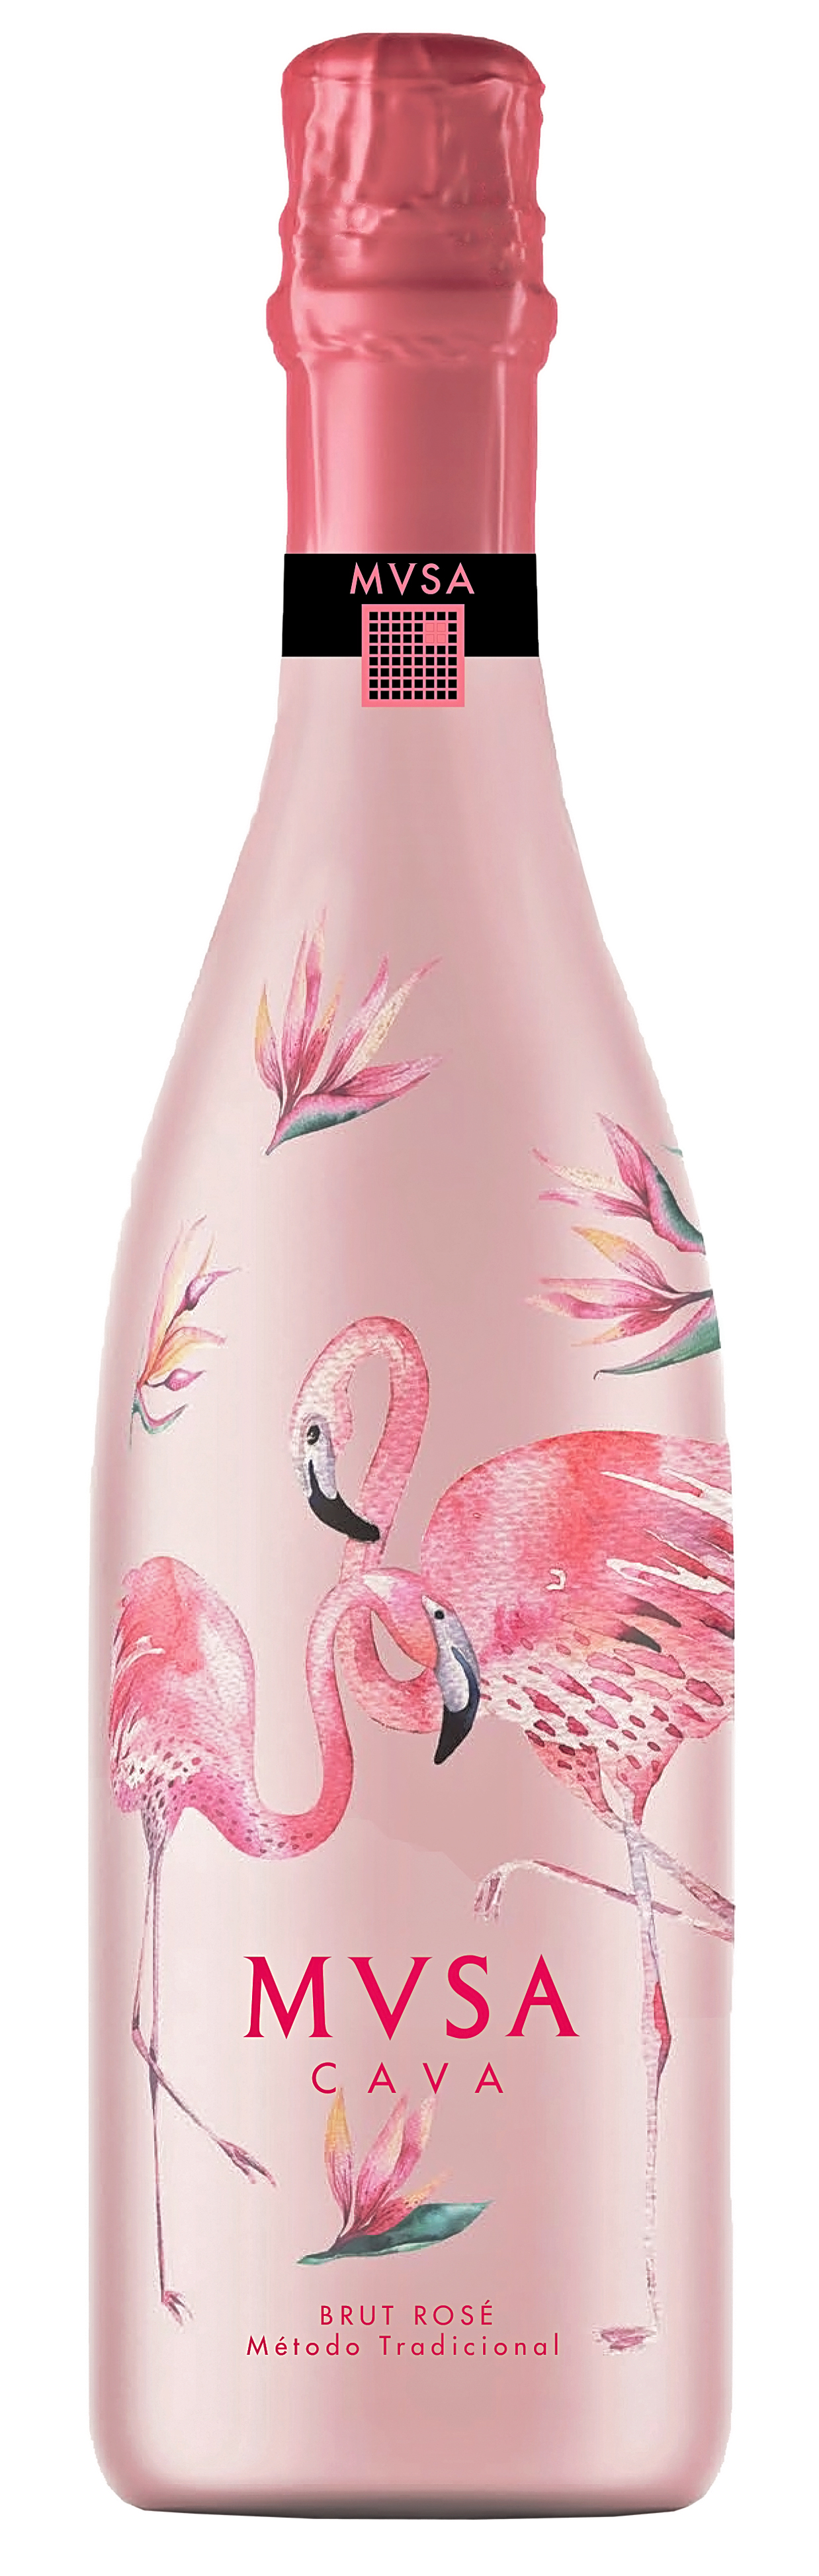 Mvsa flamingo 342 x 1080